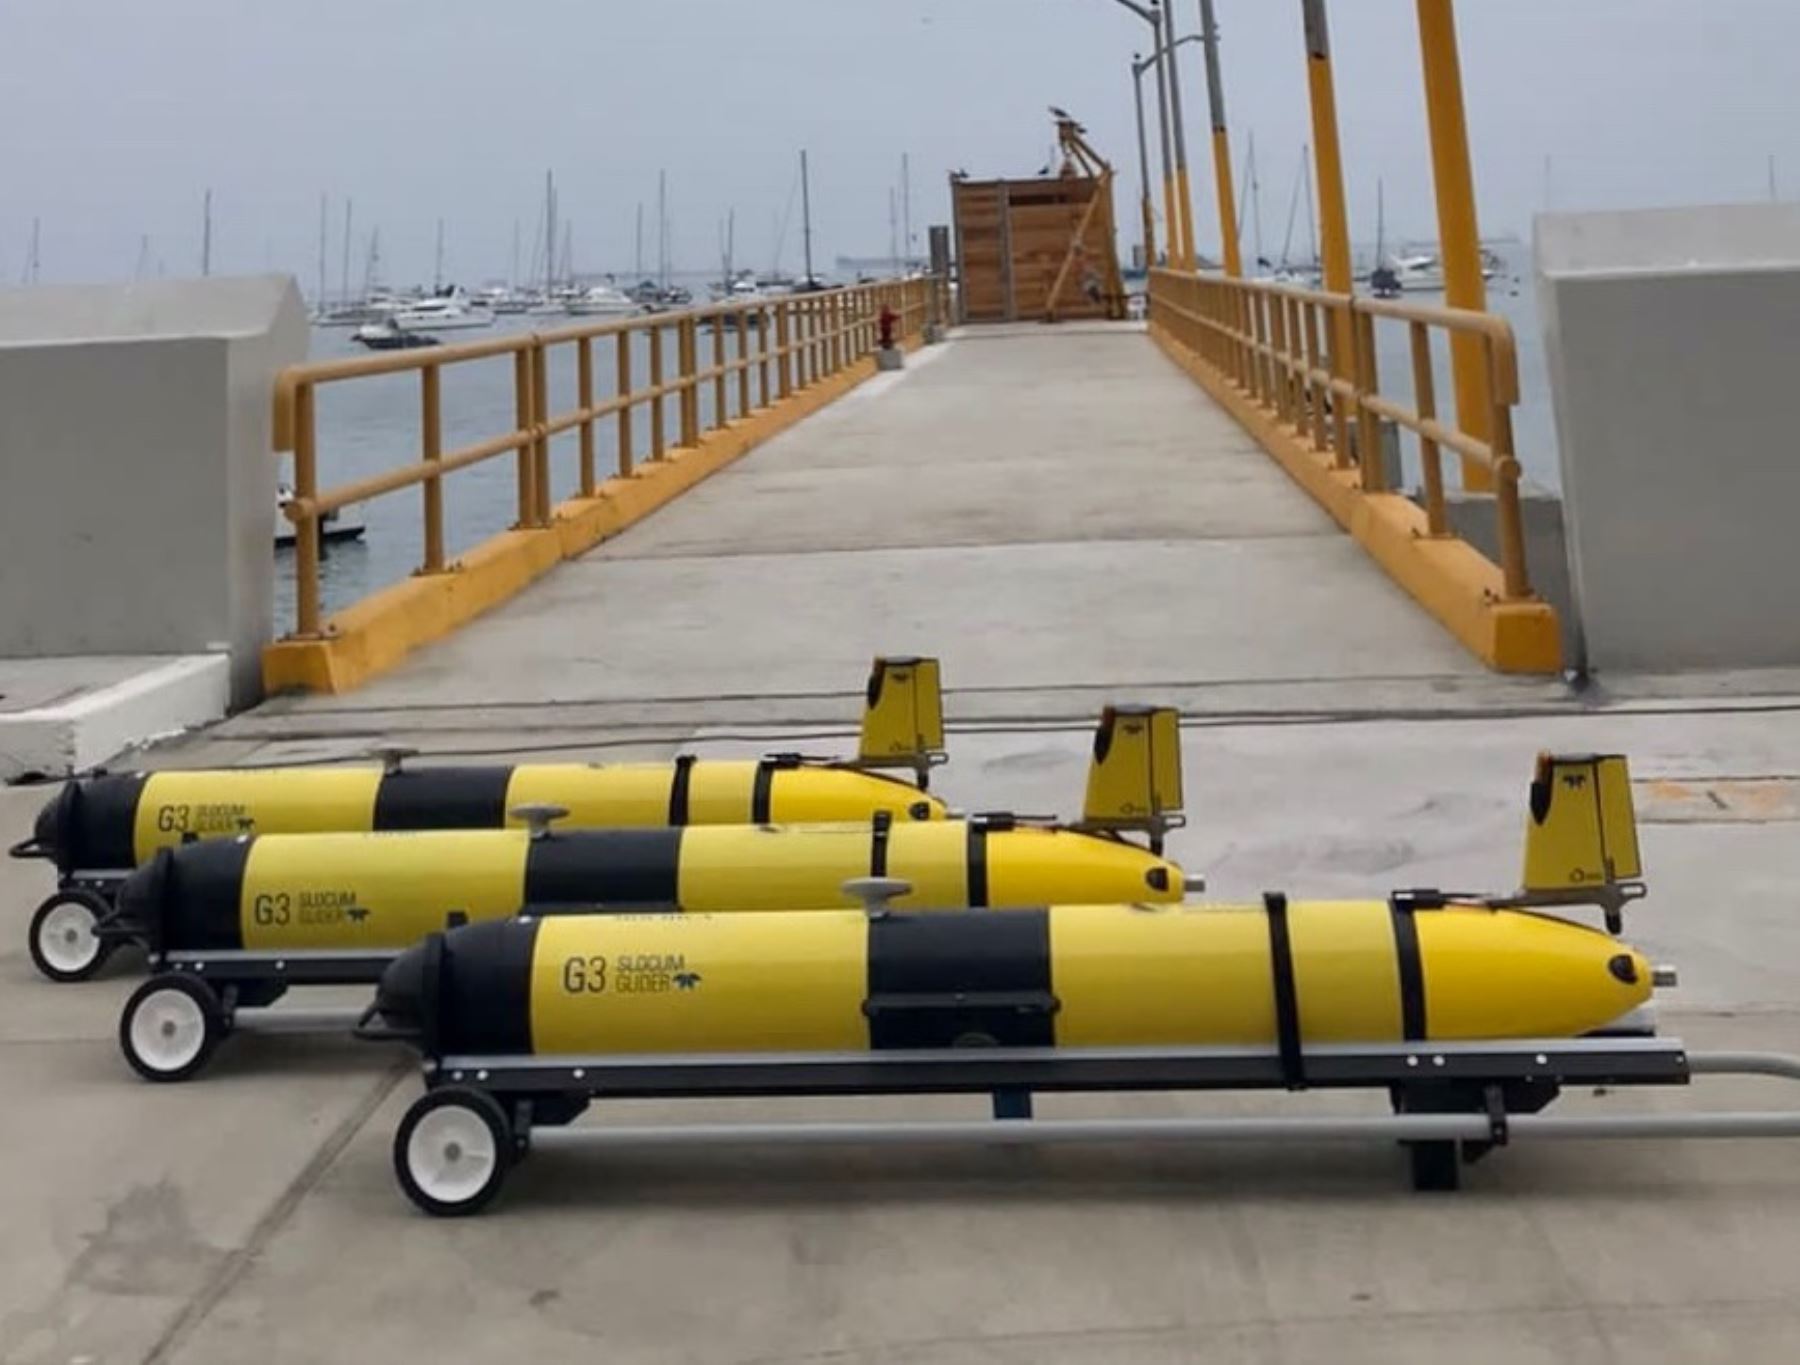 Con vehículos submarinos estudiarán profundidades del mar peruano para evaluar el impacto del cambio climático en el ecosistema marino-costero, informó Profonanpe. ANDINA/Difusión